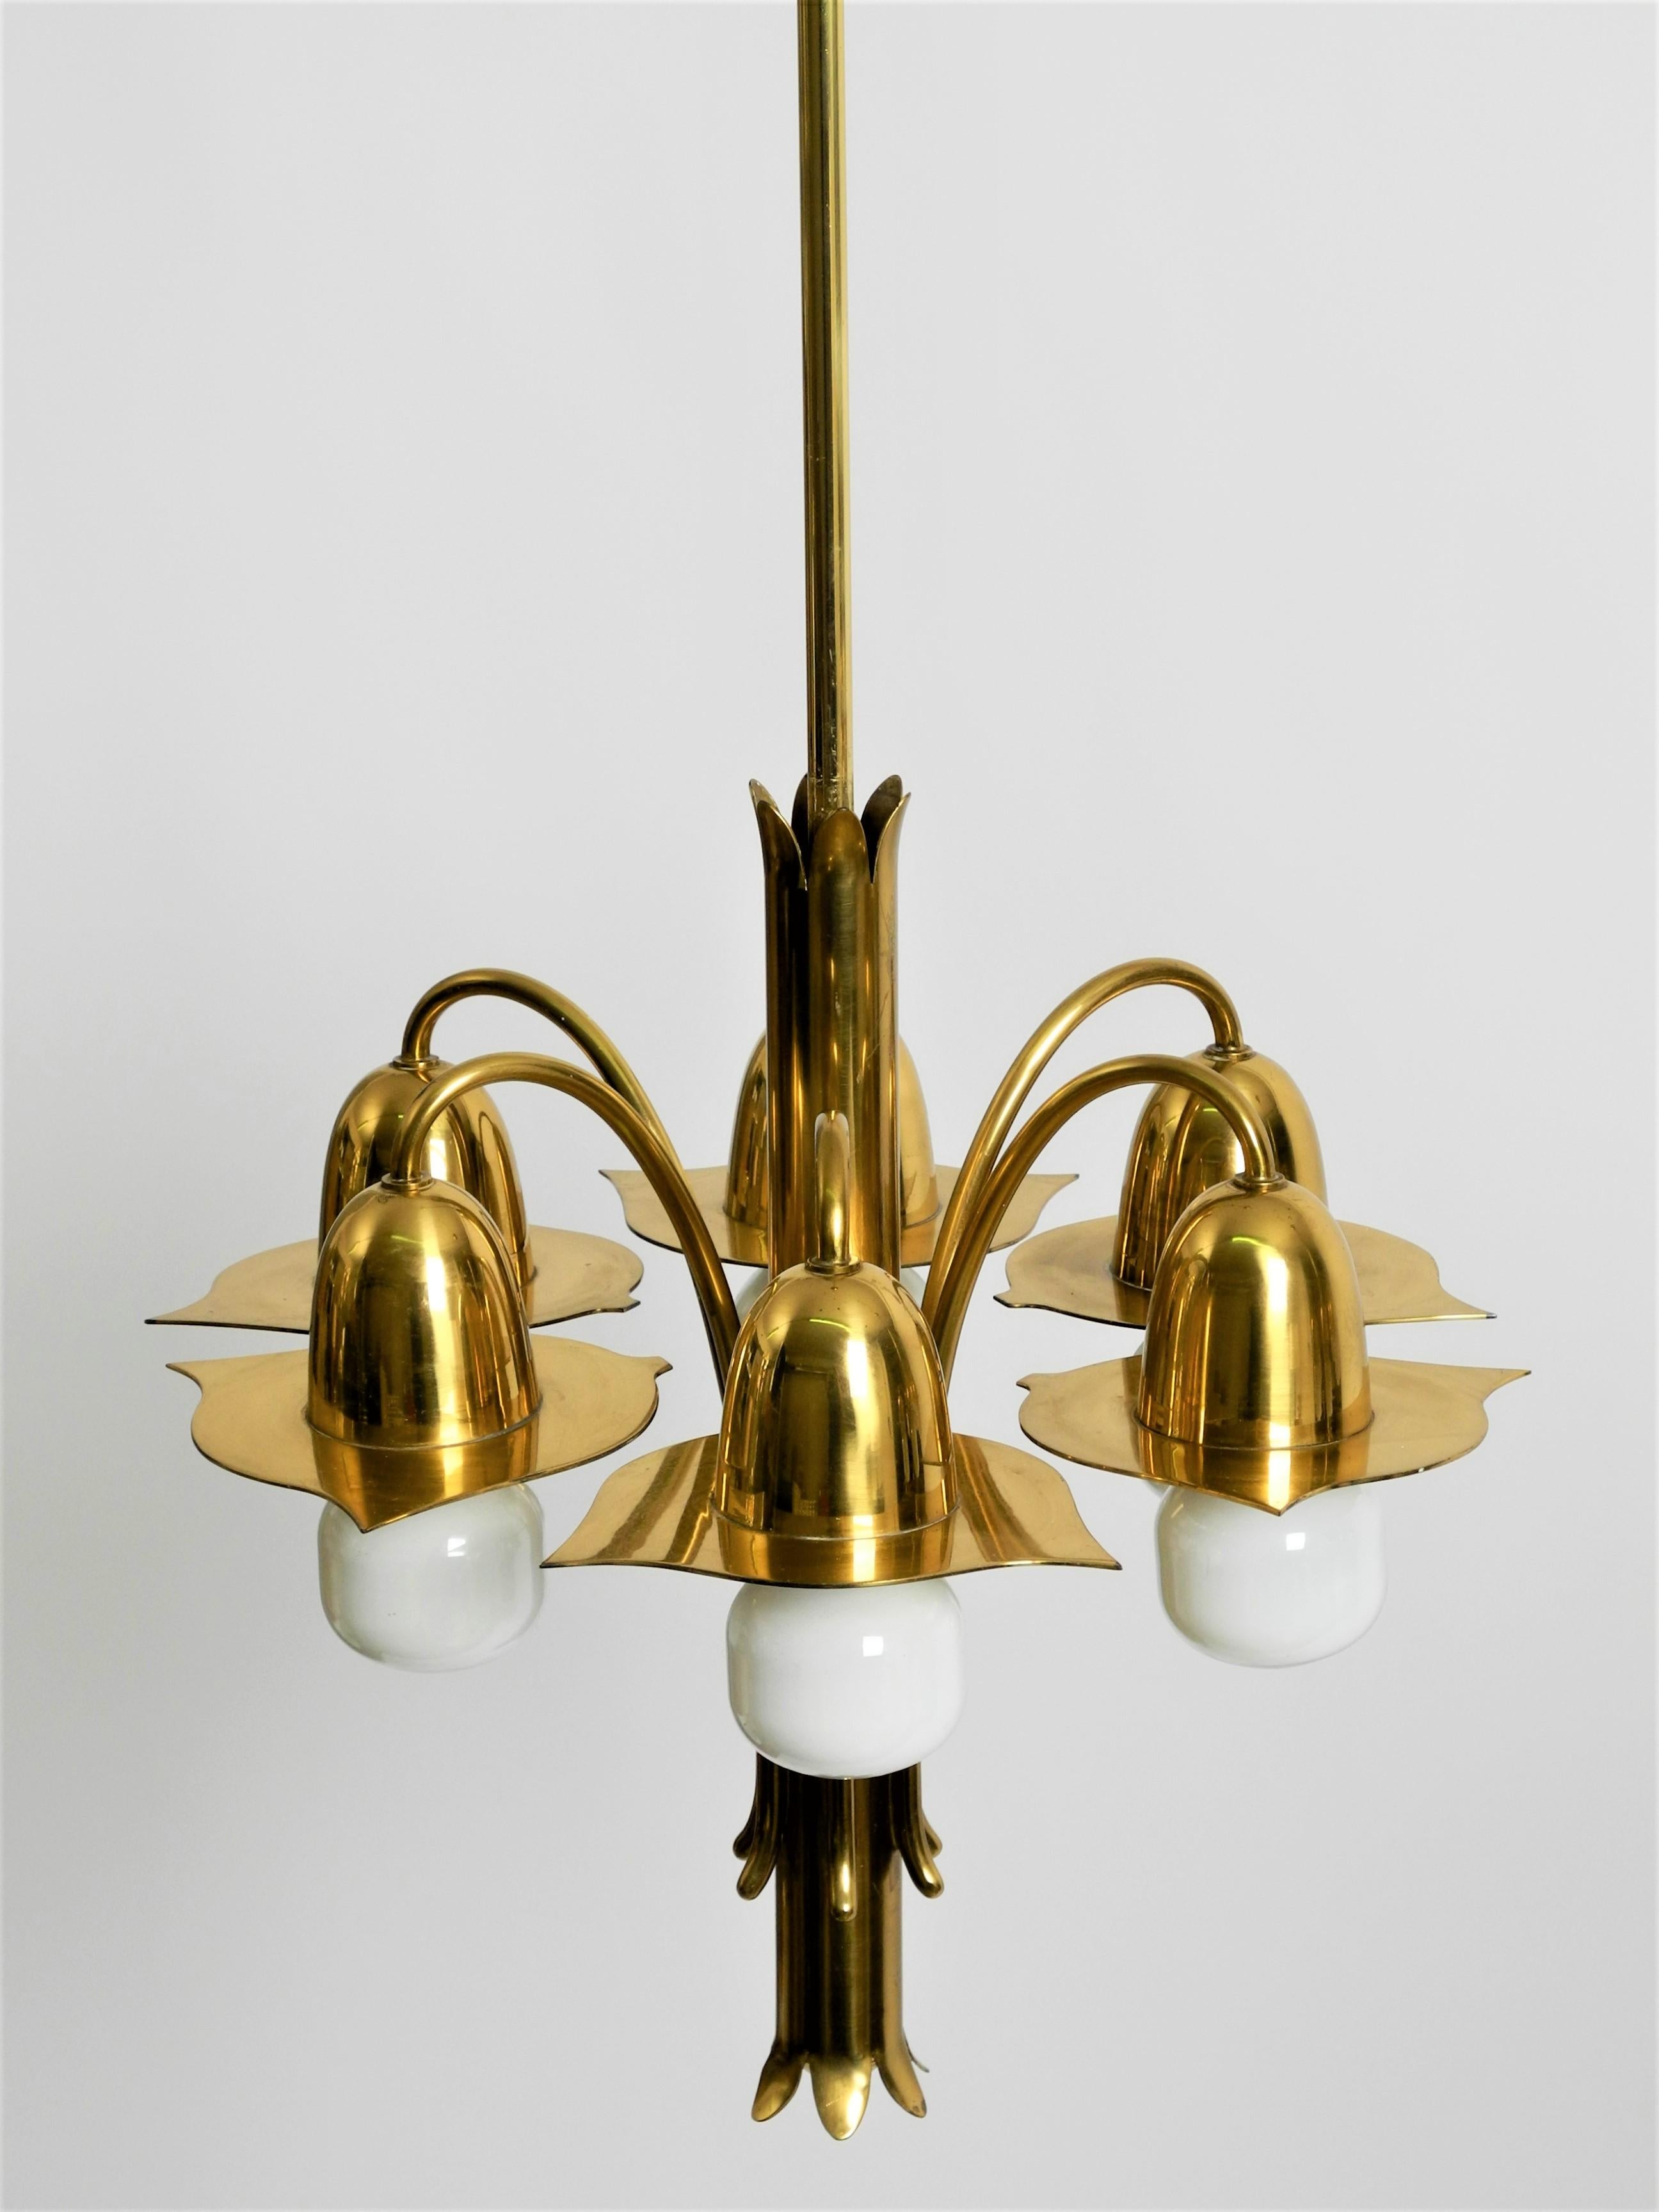 Pair of Richard Riemerschmid Pendant Lamps Chandeliers Art Nouveau, Germany 1920 For Sale 6